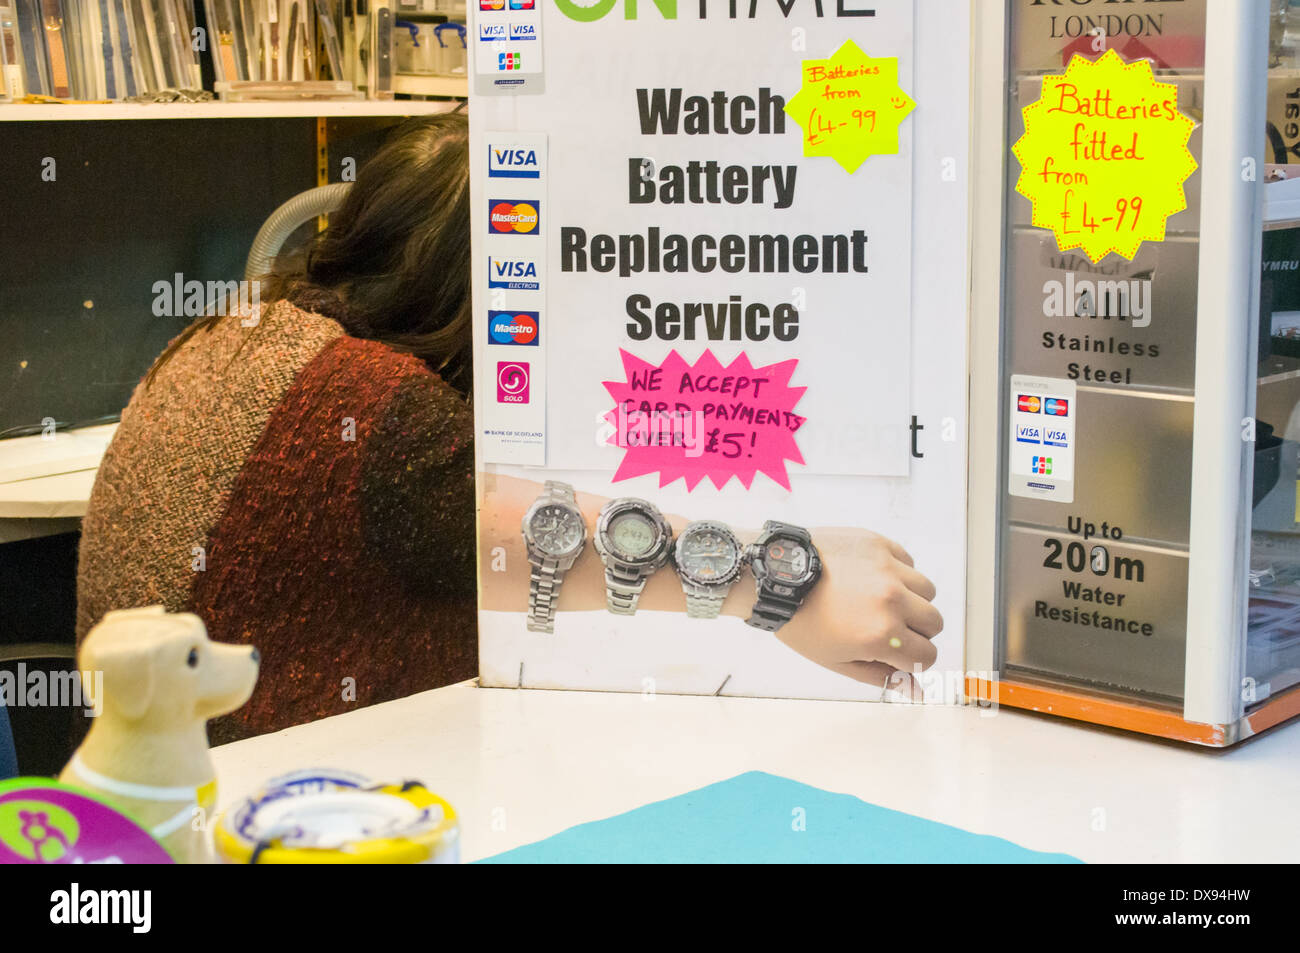 lustige Bilder von Plakat für Uhr Batterie Ersatz und Anbieter Mash up Stockfoto